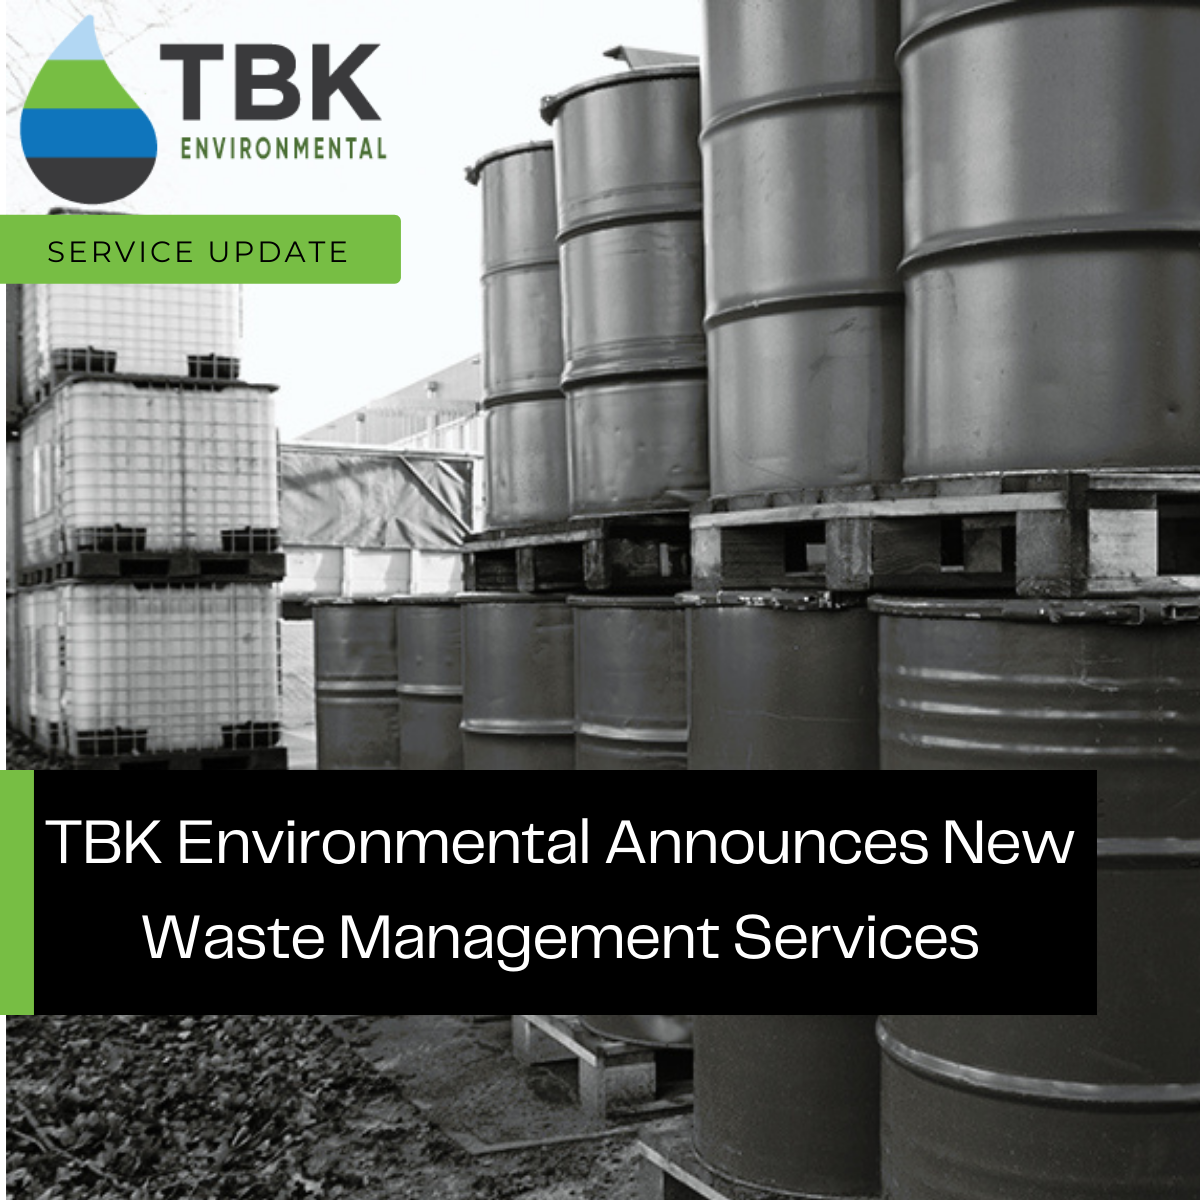 TBK Environmental Announces Waste Management Services